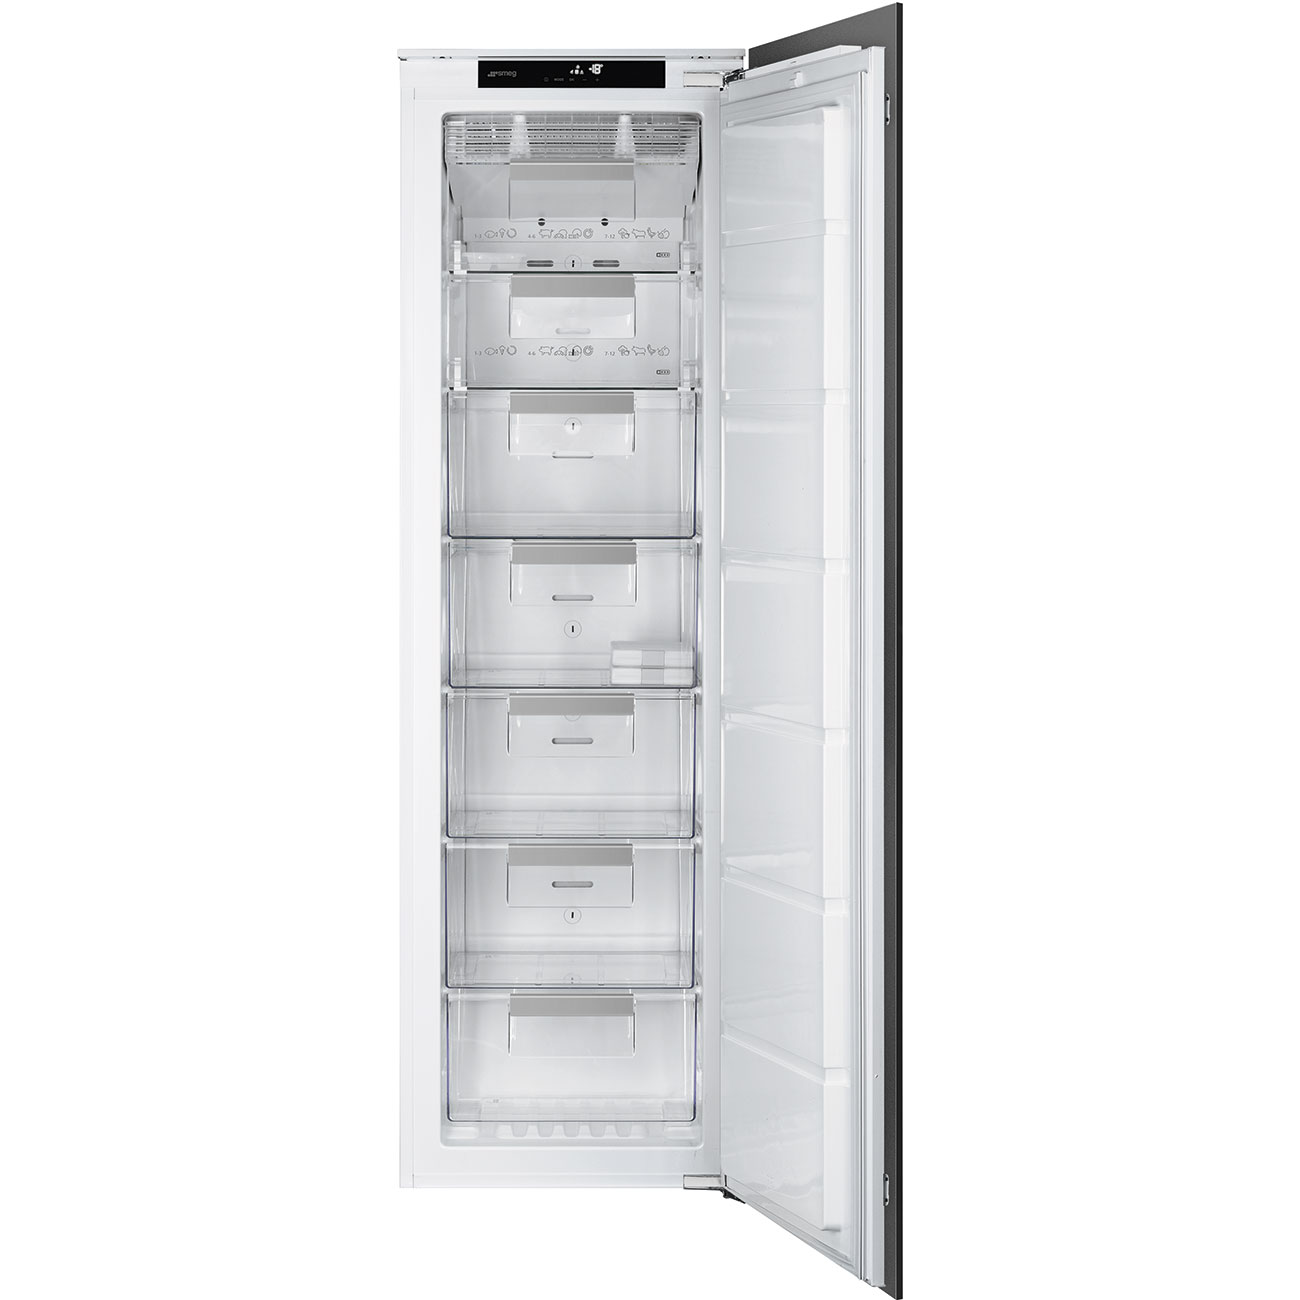 Single door Built-in freezer- Smeg_1